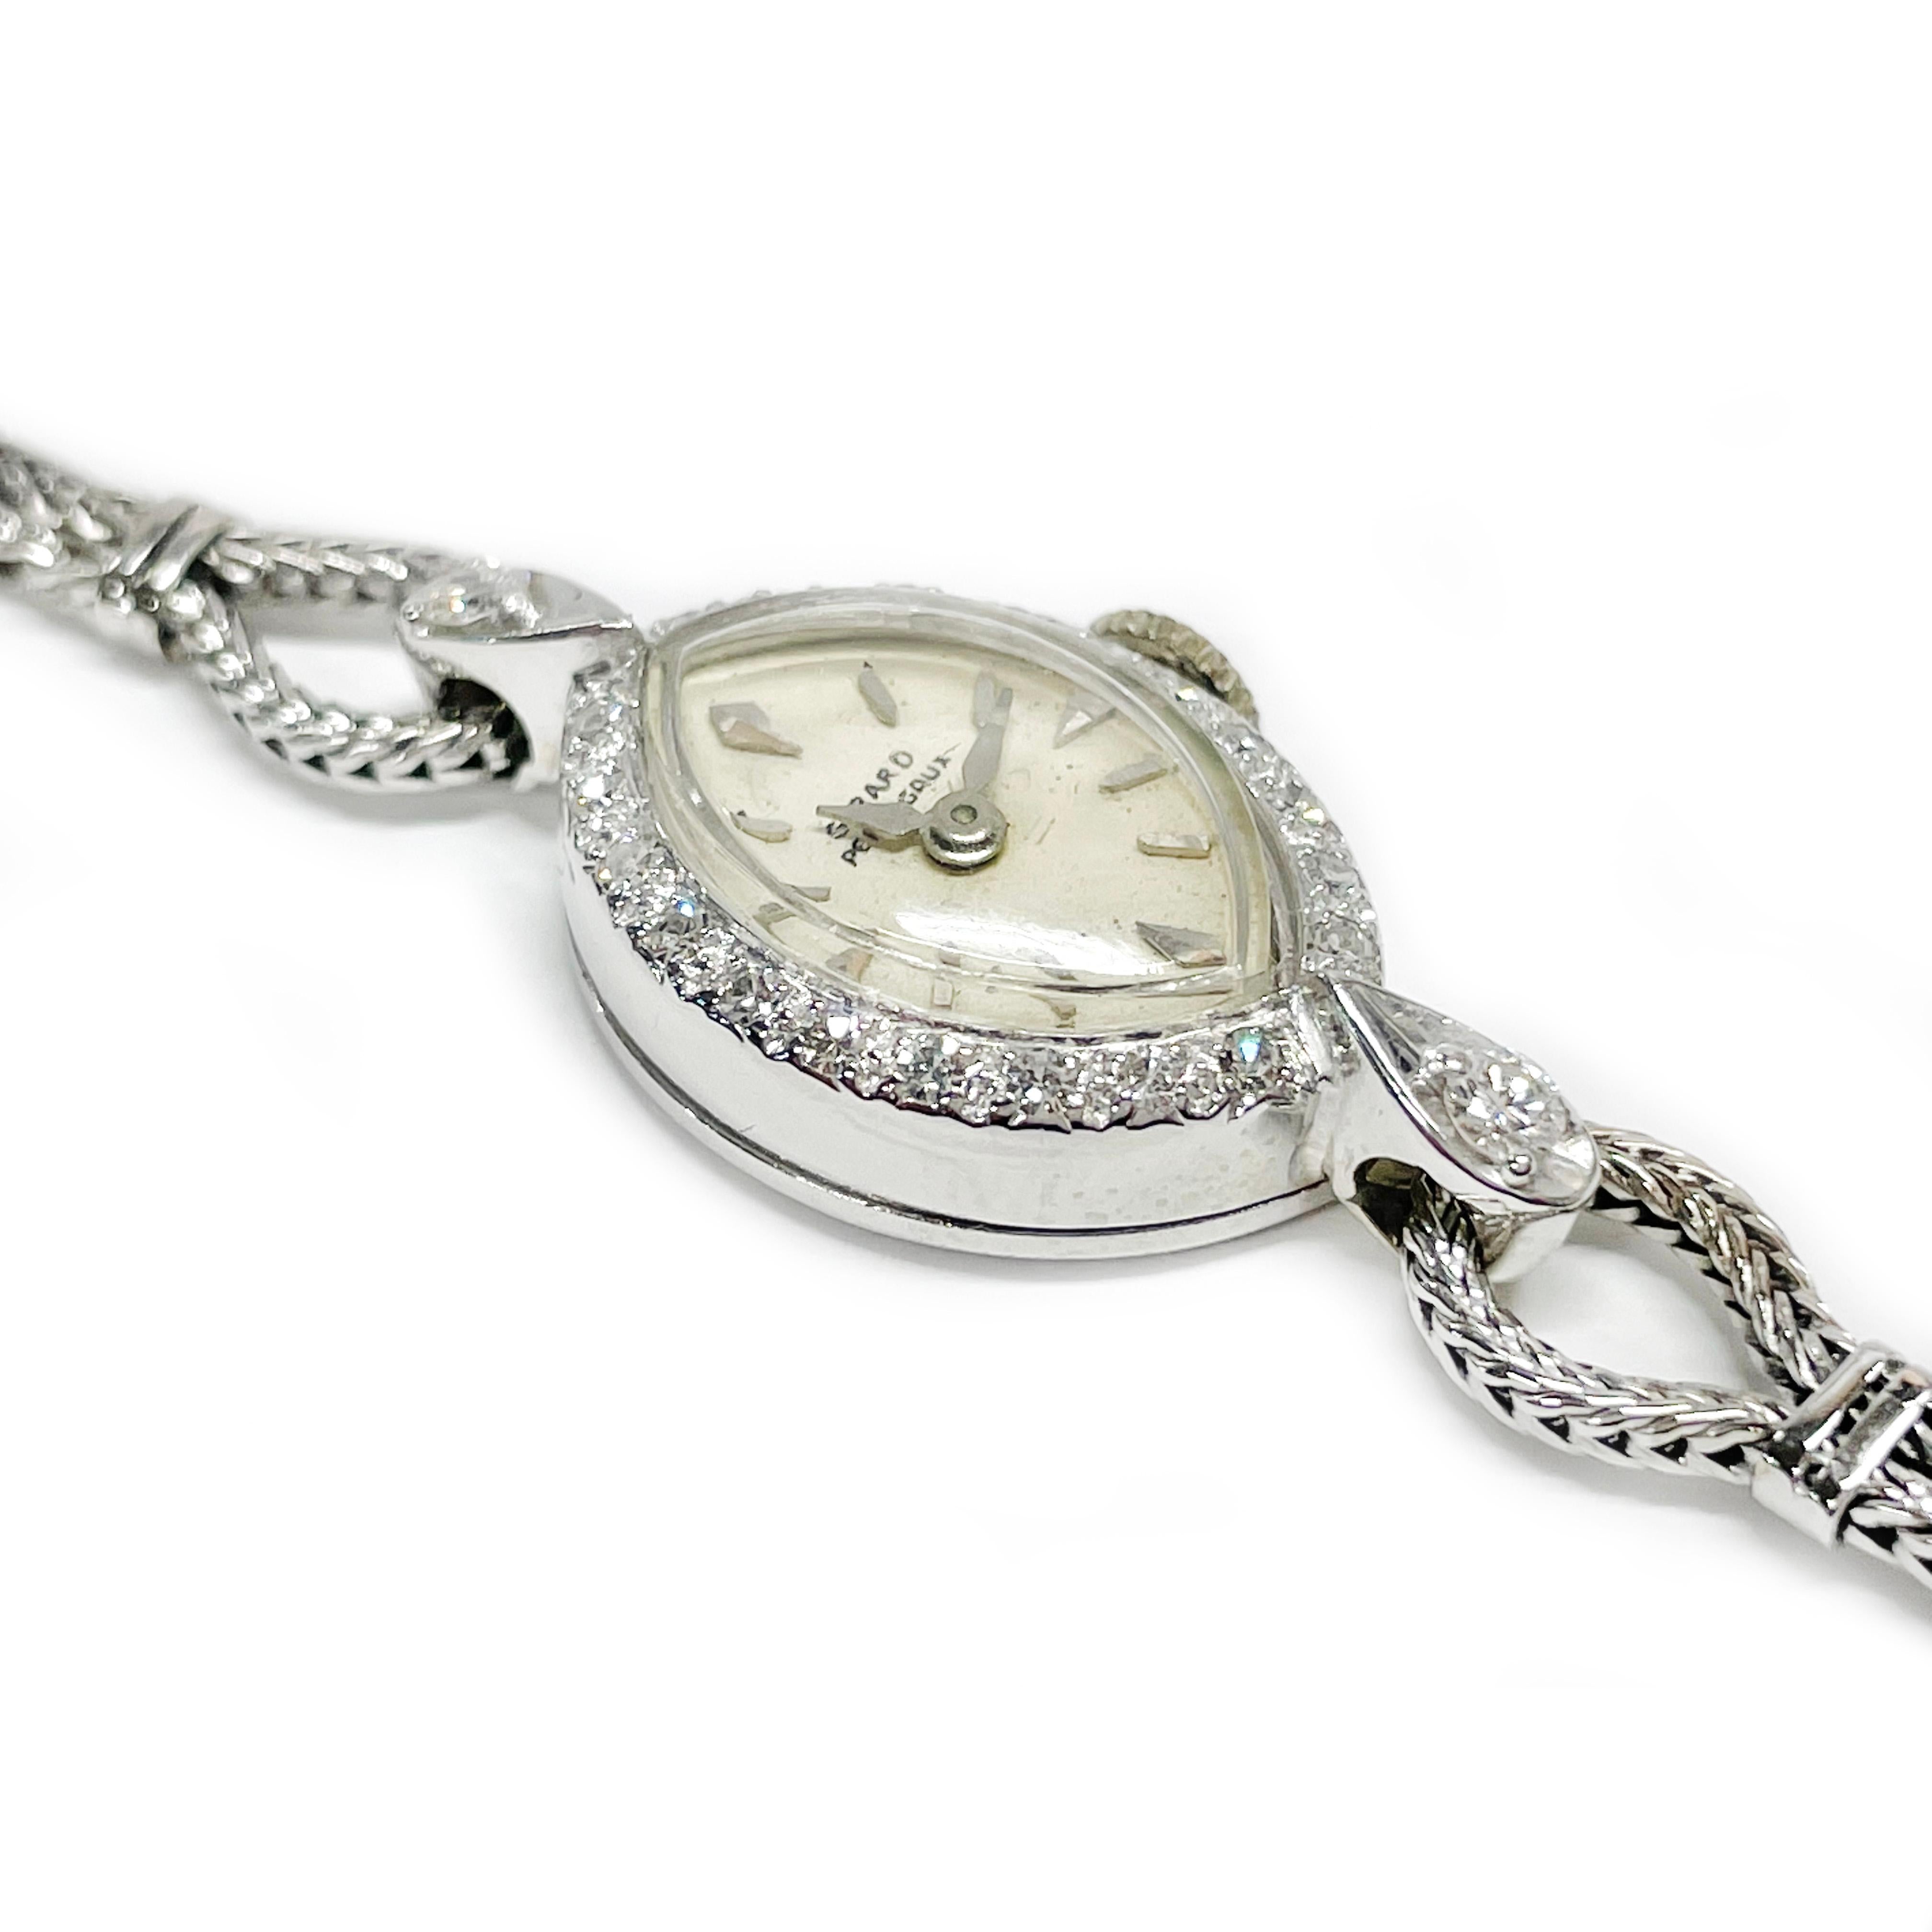 Montre-bracelet à diamants pour femmes Girard Perregaux, circa 1930. Le cadran marquise est encadré de diamants ronds taille unique sertis en perles, avec des aiguilles des heures et des minutes en argent. La montre est ornée de vingt diamants ronds